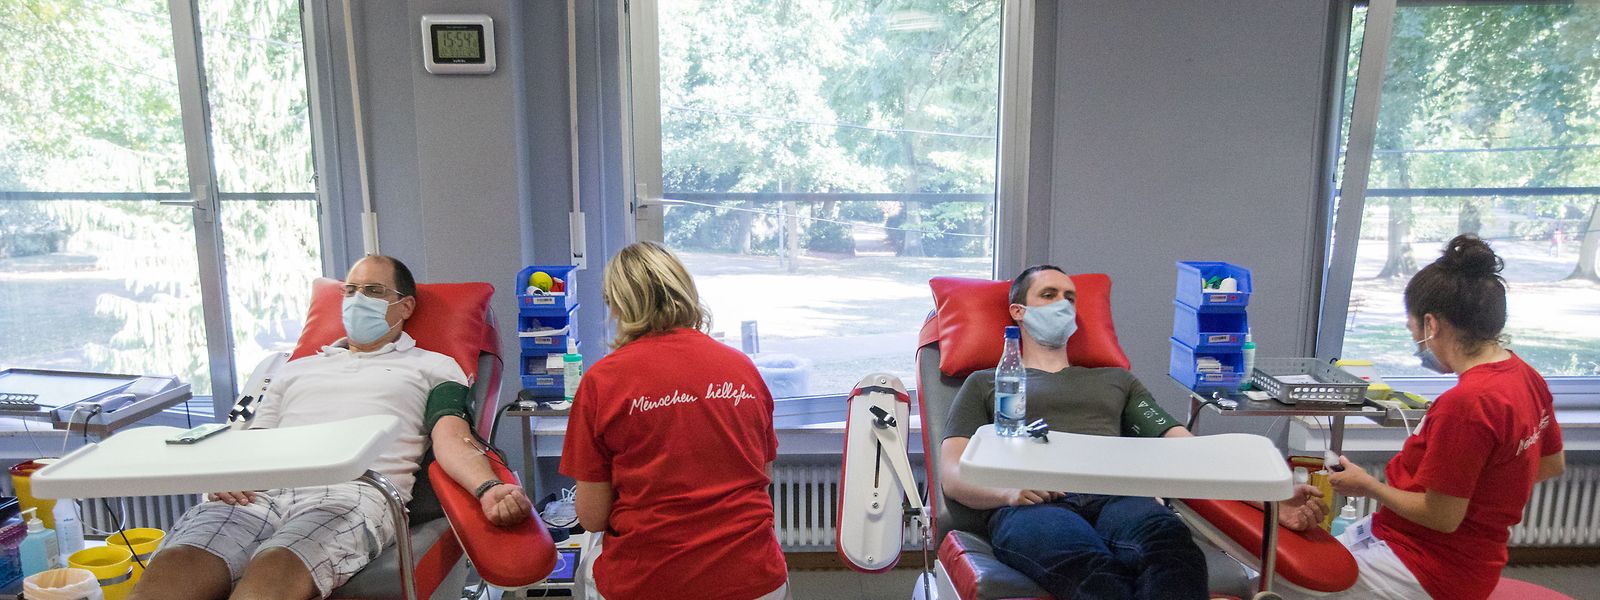 A Cruz Vermelha luxemburguesa lançou um apelo urgente a dadores de sangue.